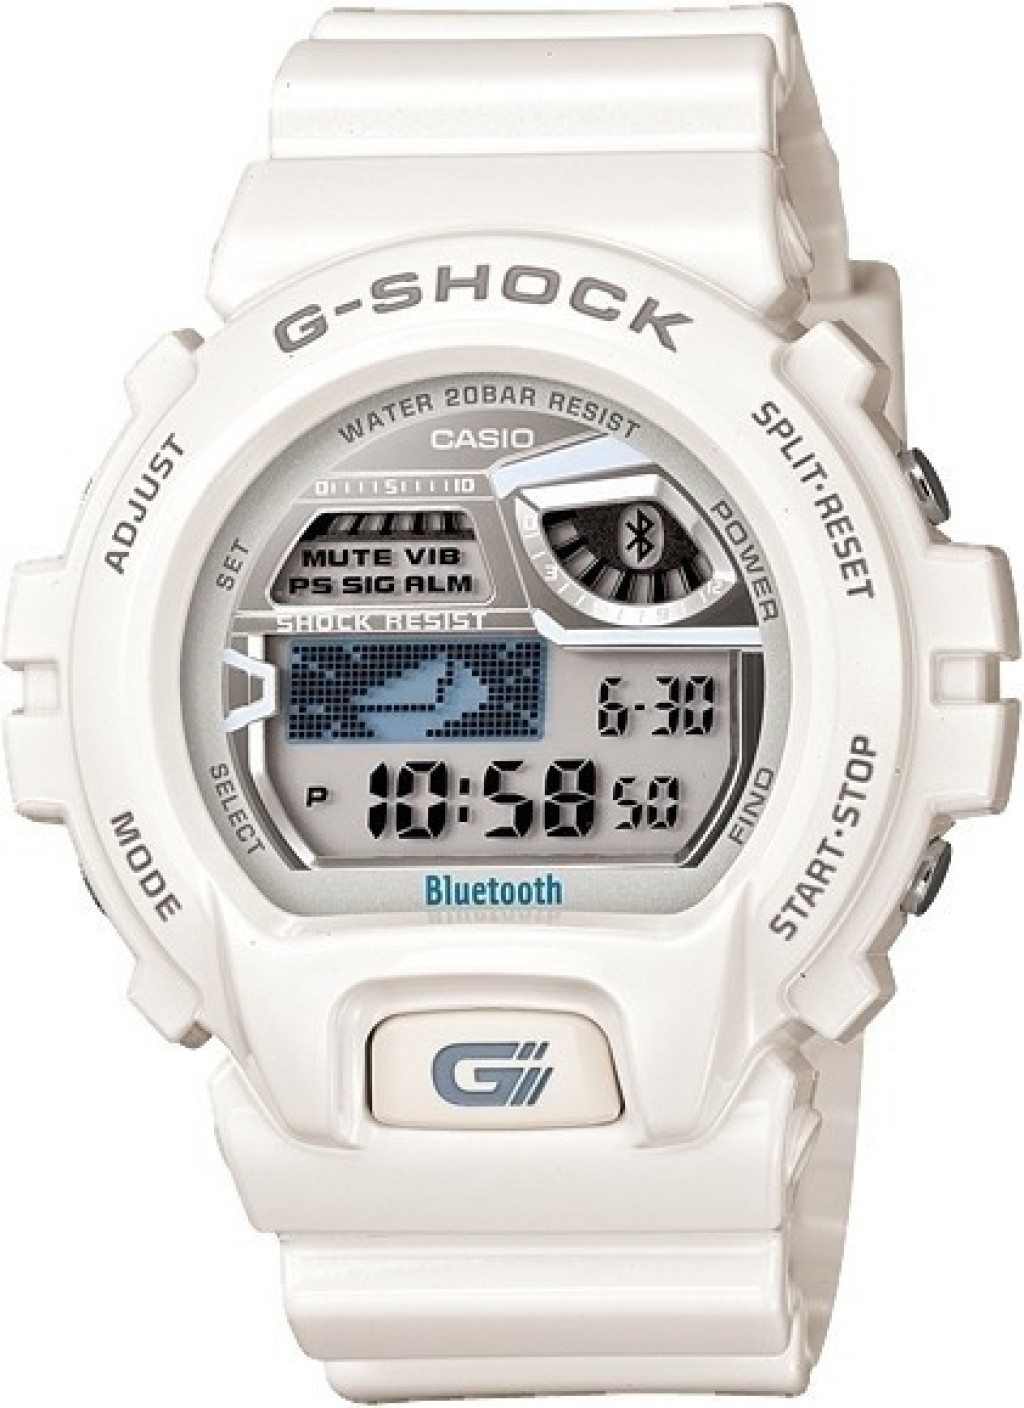 Casio g shock bluetooth watch